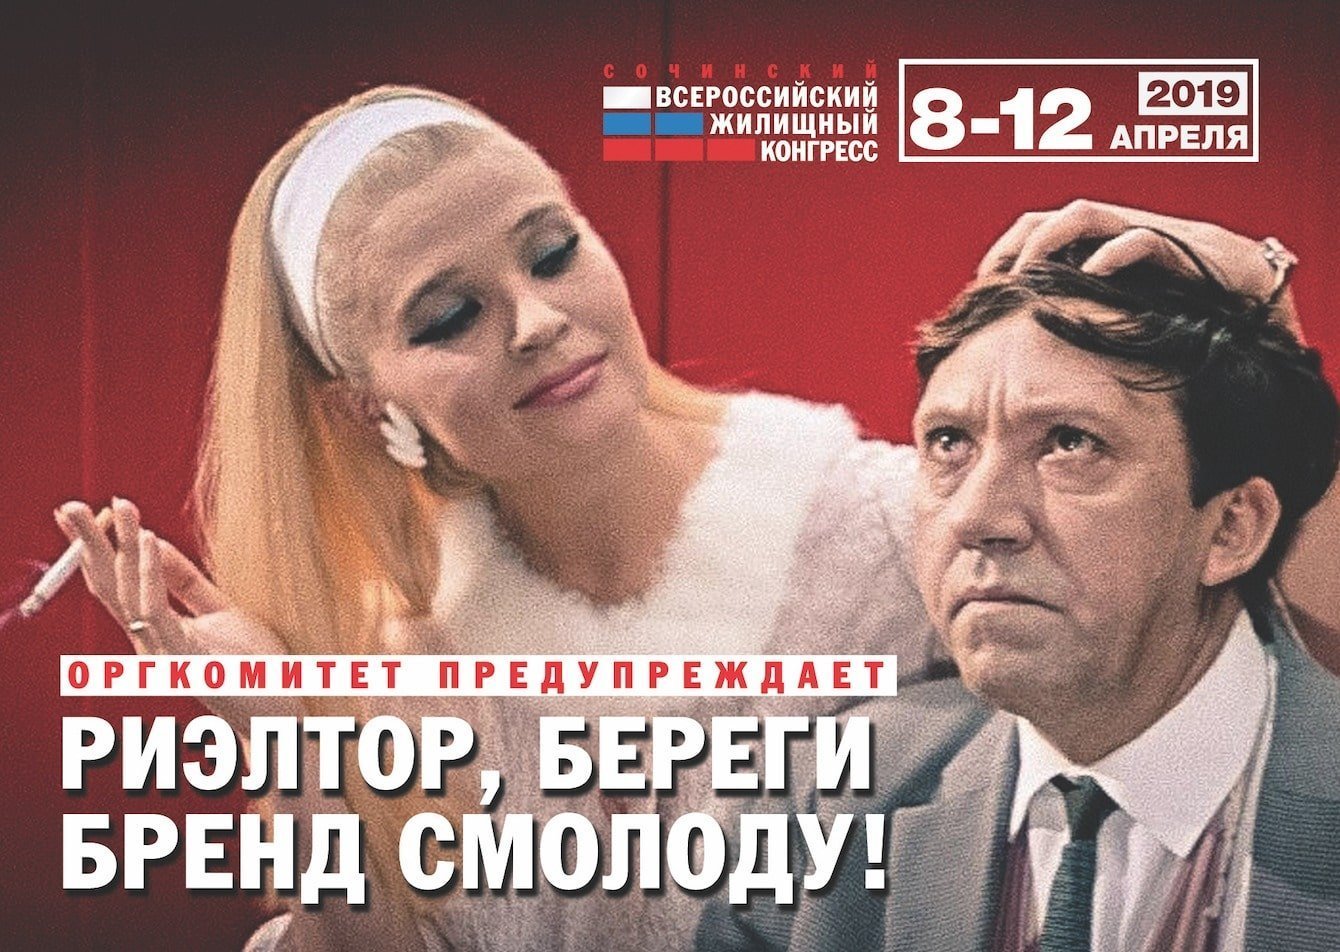 Всероссийский жилищный конгресс 